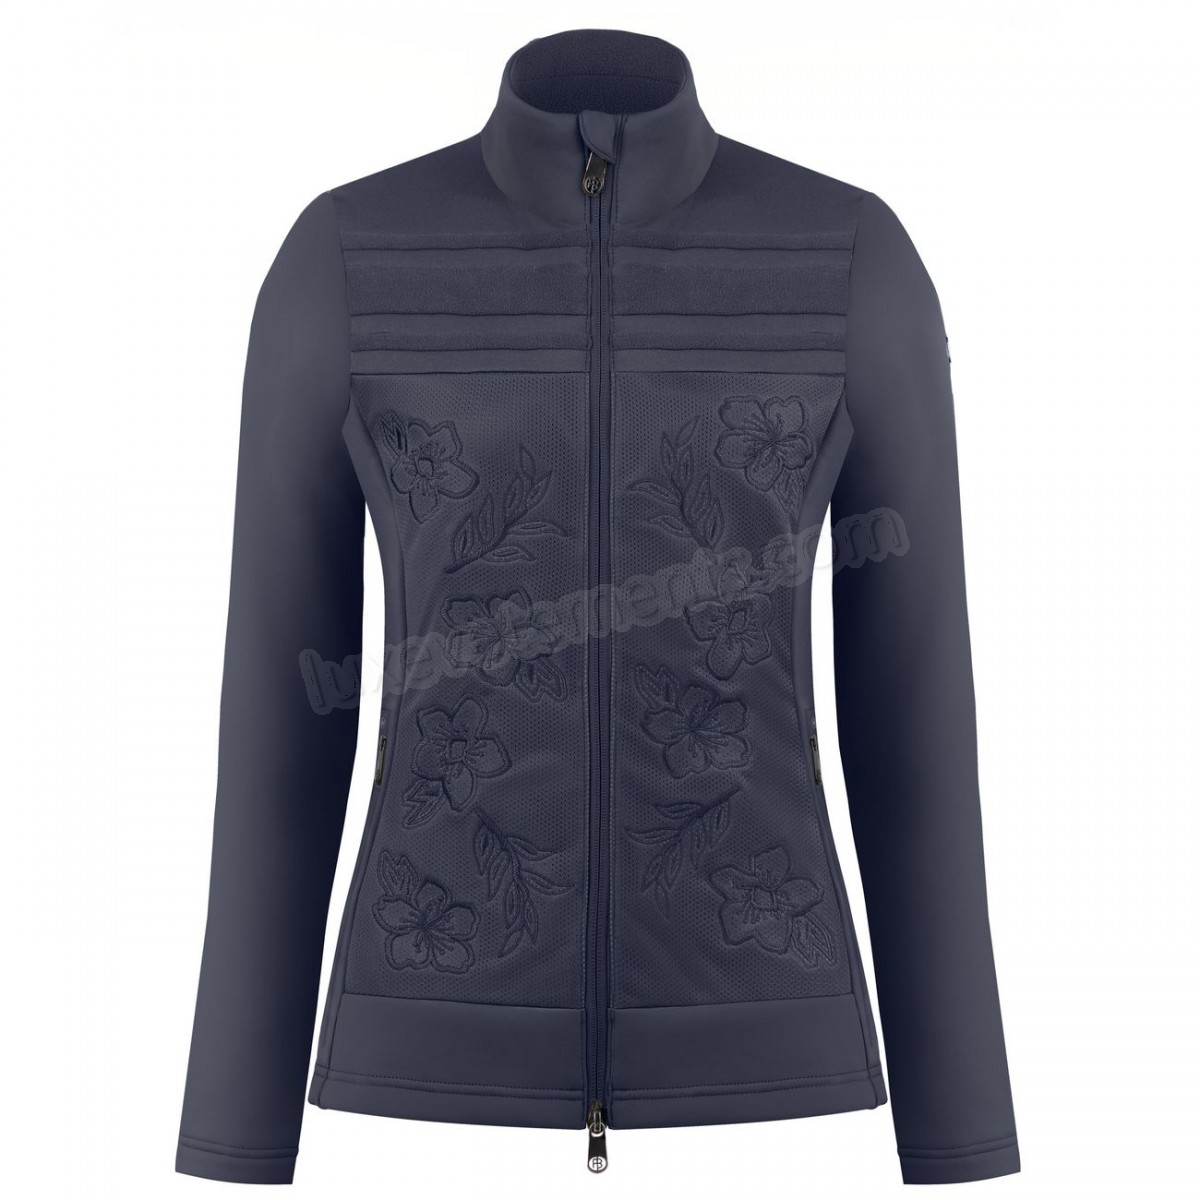 Poivre Blanc-Sports d'hiver femme POIVRE BLANC Veste Polaire Poivre Blanc Hybrid Stretch Fleece Jacket 1605 Gothic Blue 4 Femme Vente en ligne - -4